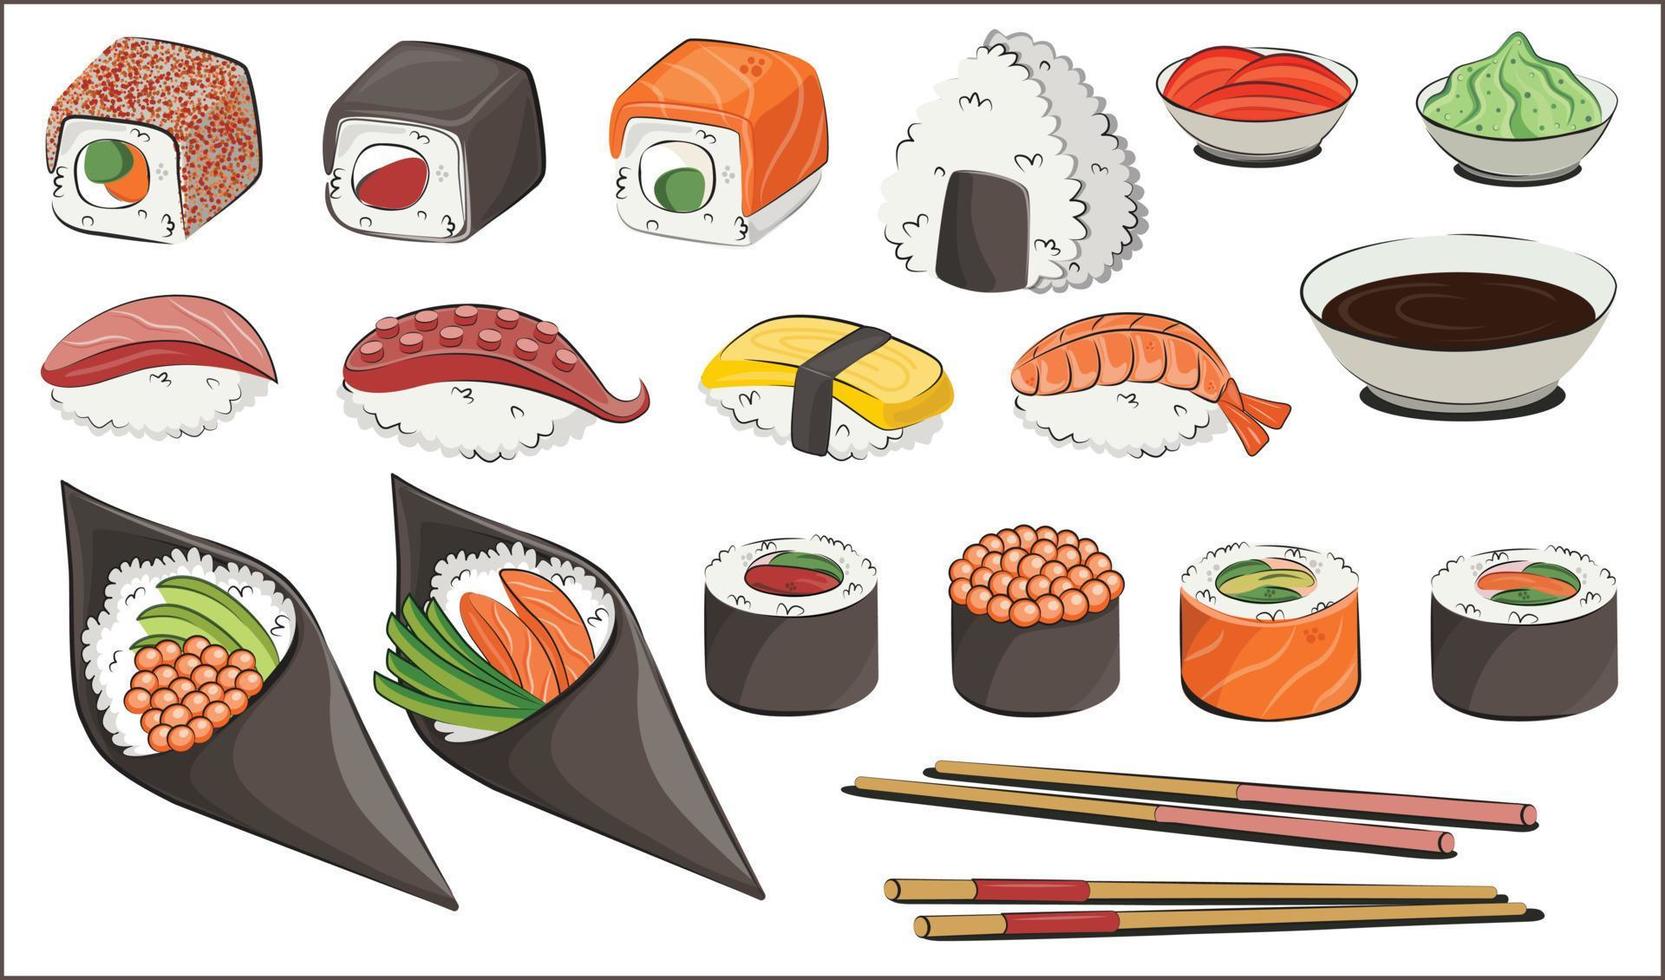 Japanse keuken, vast voedsel. voor restaurantmenu's en posters. levering sites platte vectorillustratie geïsoleerd op een witte achtergrond. sushi rolt onigiri sojasaus set. voorraad foto. vector